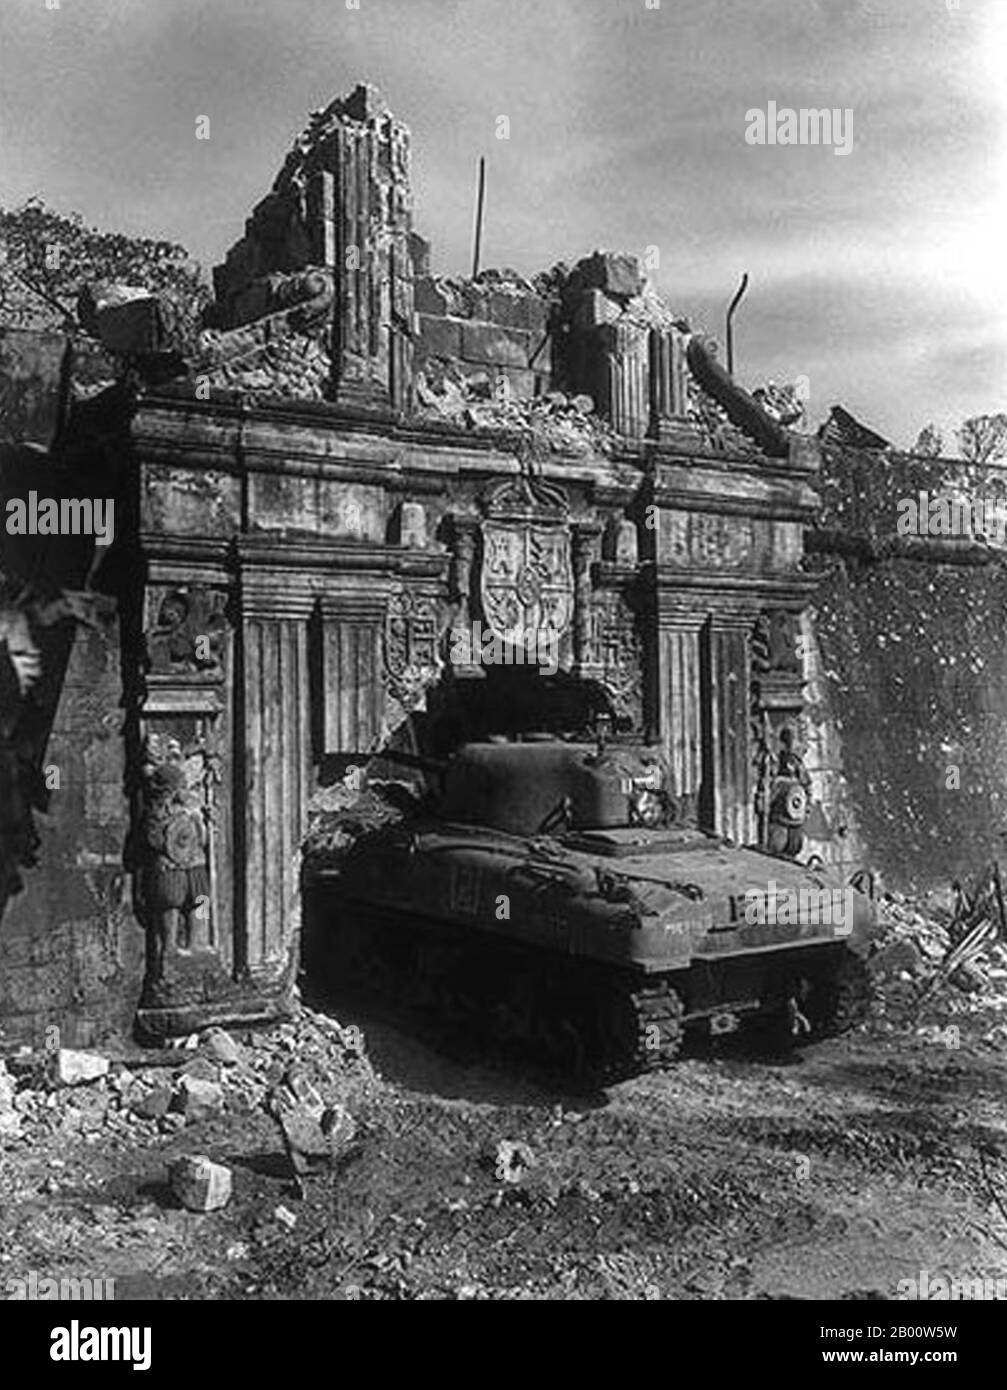 Philippinen: Ein Sherman-Kampfpanzer der US-Armee im zerstörten Tor zu Intramuros, Schlacht von Manila, 1945. Die Schlacht von Manila vom 3. Februar bis zum 3. März 1945, die von amerikanischen, philippinischen und japanischen Streitkräften ausgetragen wurde, war Teil der philippinischen Kampagne 1945. Die einmonatige Schlacht, die in einem schrecklichen Blutbad und totaler Verwüstung der Stadt gipfelte, war Schauplatz der schlimmsten städtischen Kämpfe im pazifischen Theater und beendete fast drei Jahre japanischer Militärbesetzung auf den Philippinen (1942–1945). Die Eroberung der Stadt wurde als General Douglas MacArthur's Schlüssel zum Sieg markiert. Stockfoto